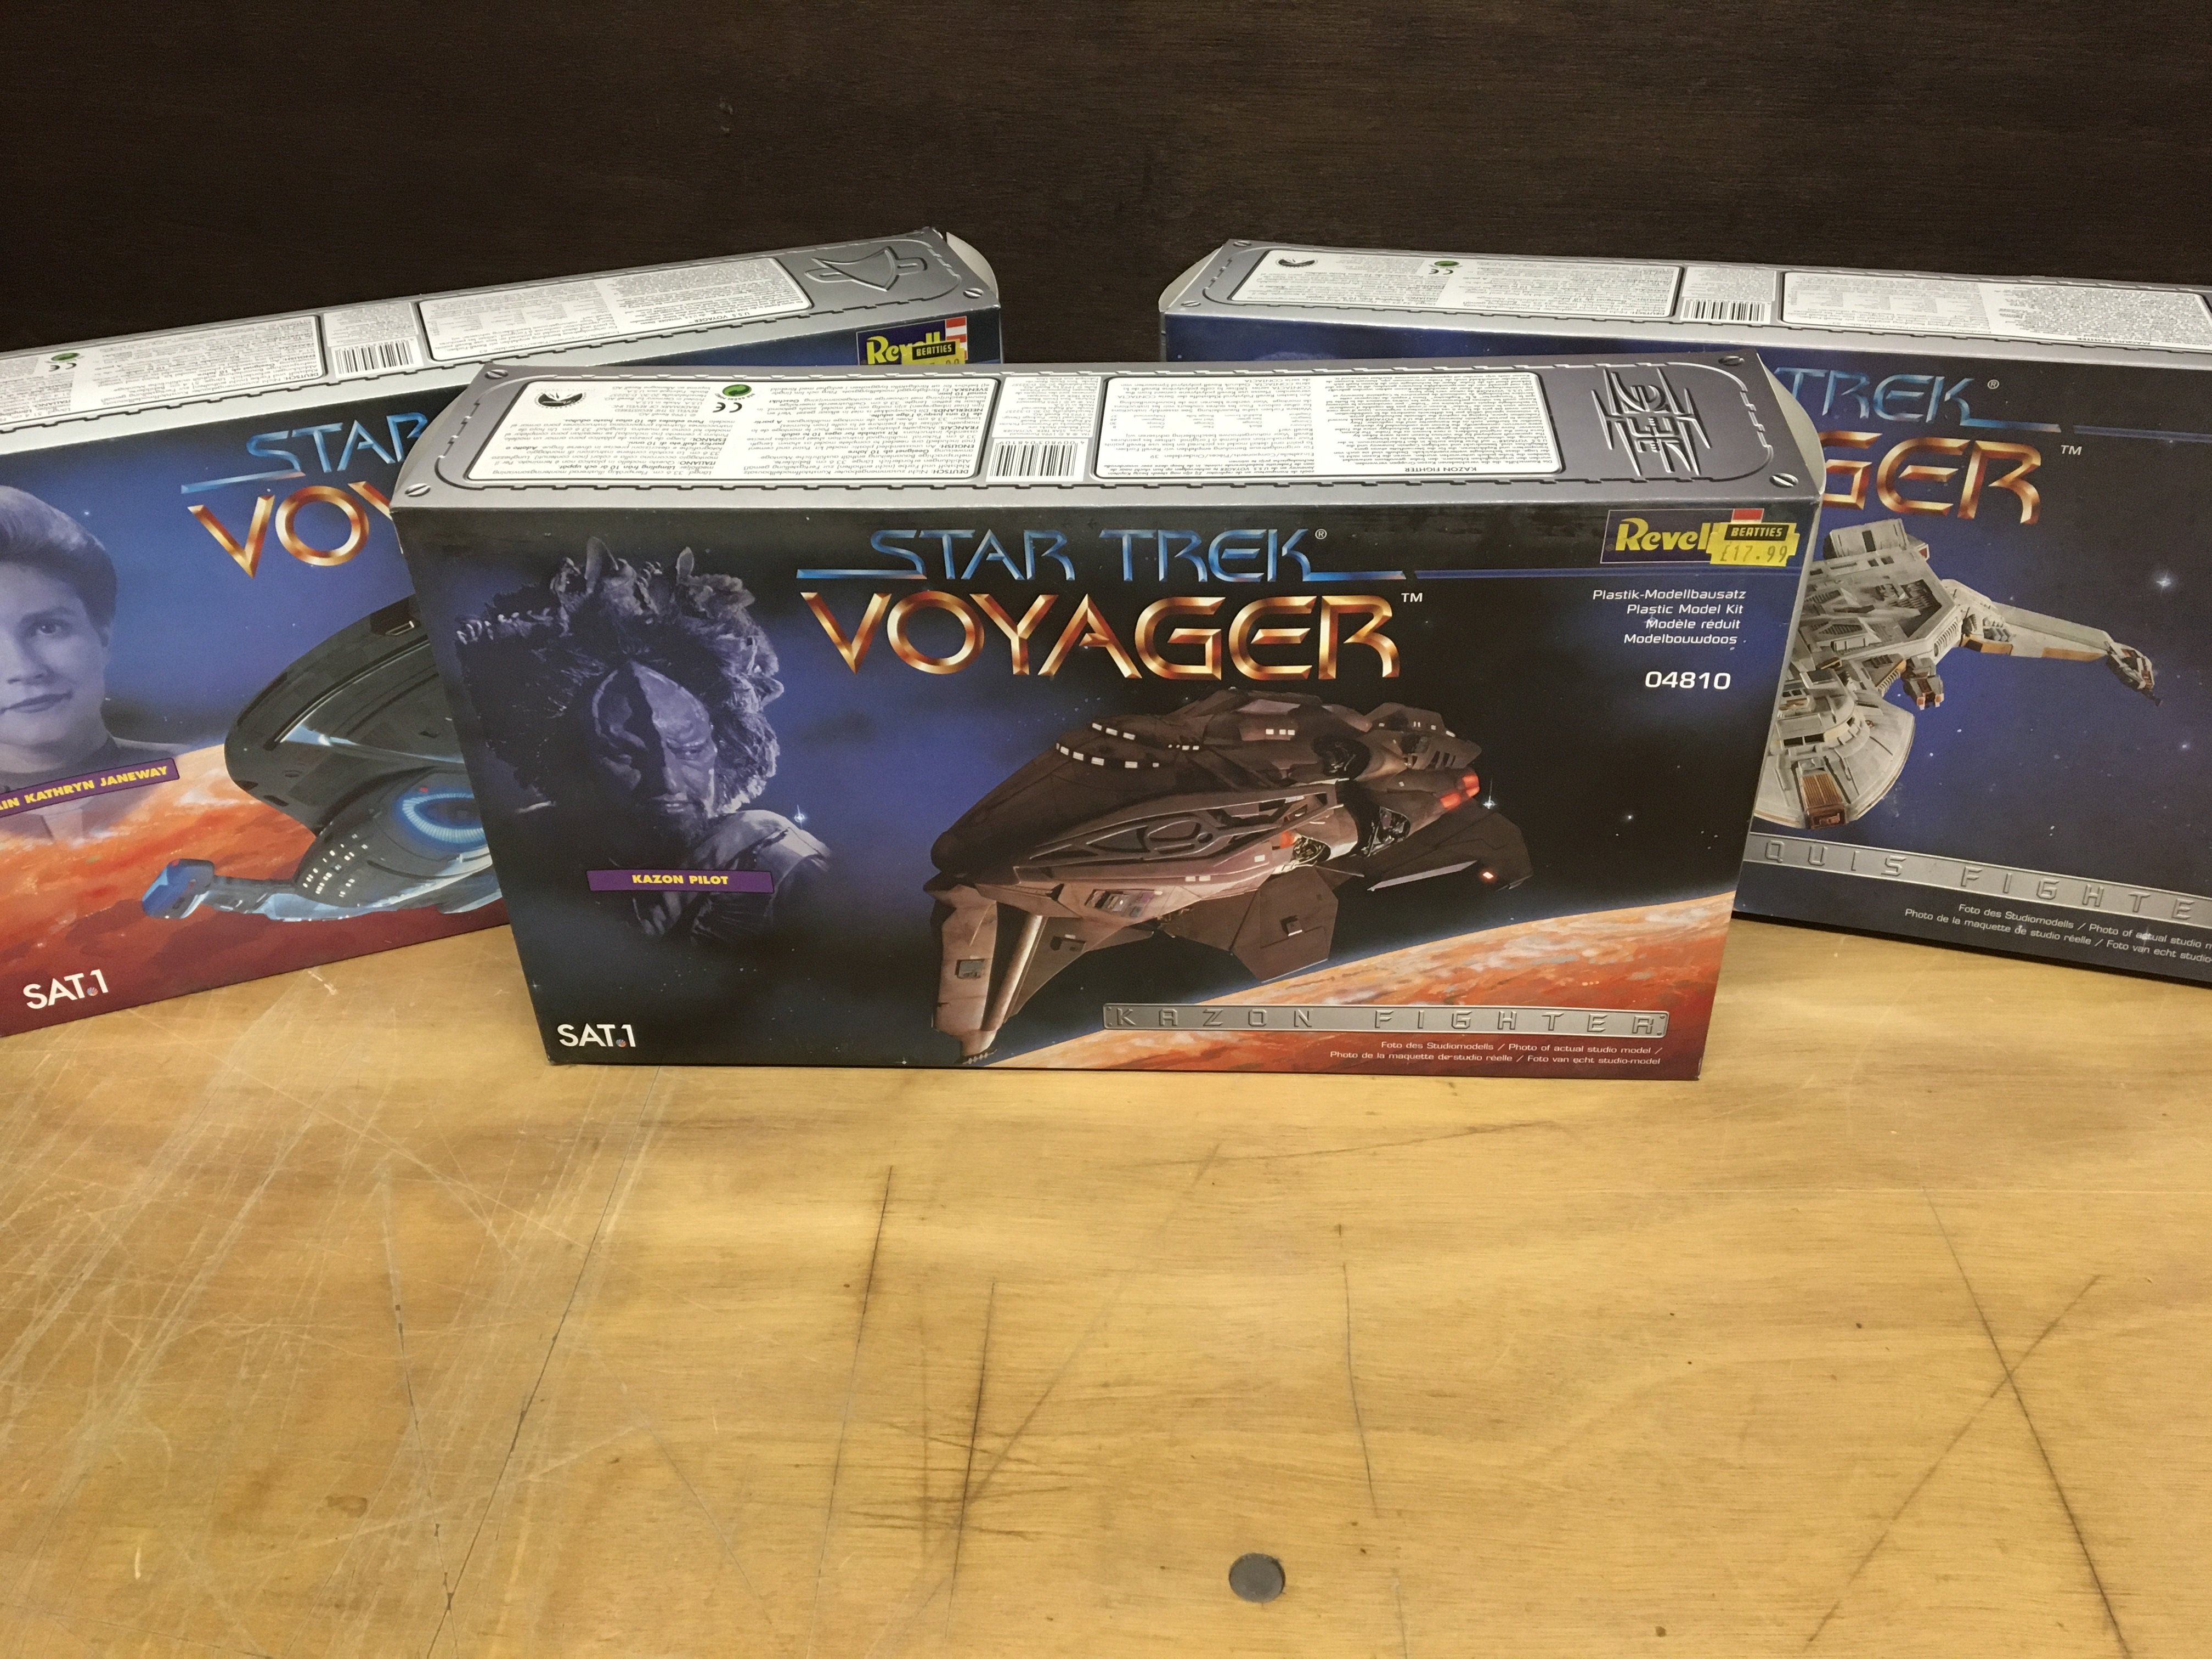 3 Star Trek Voyager Revell models kits (3)